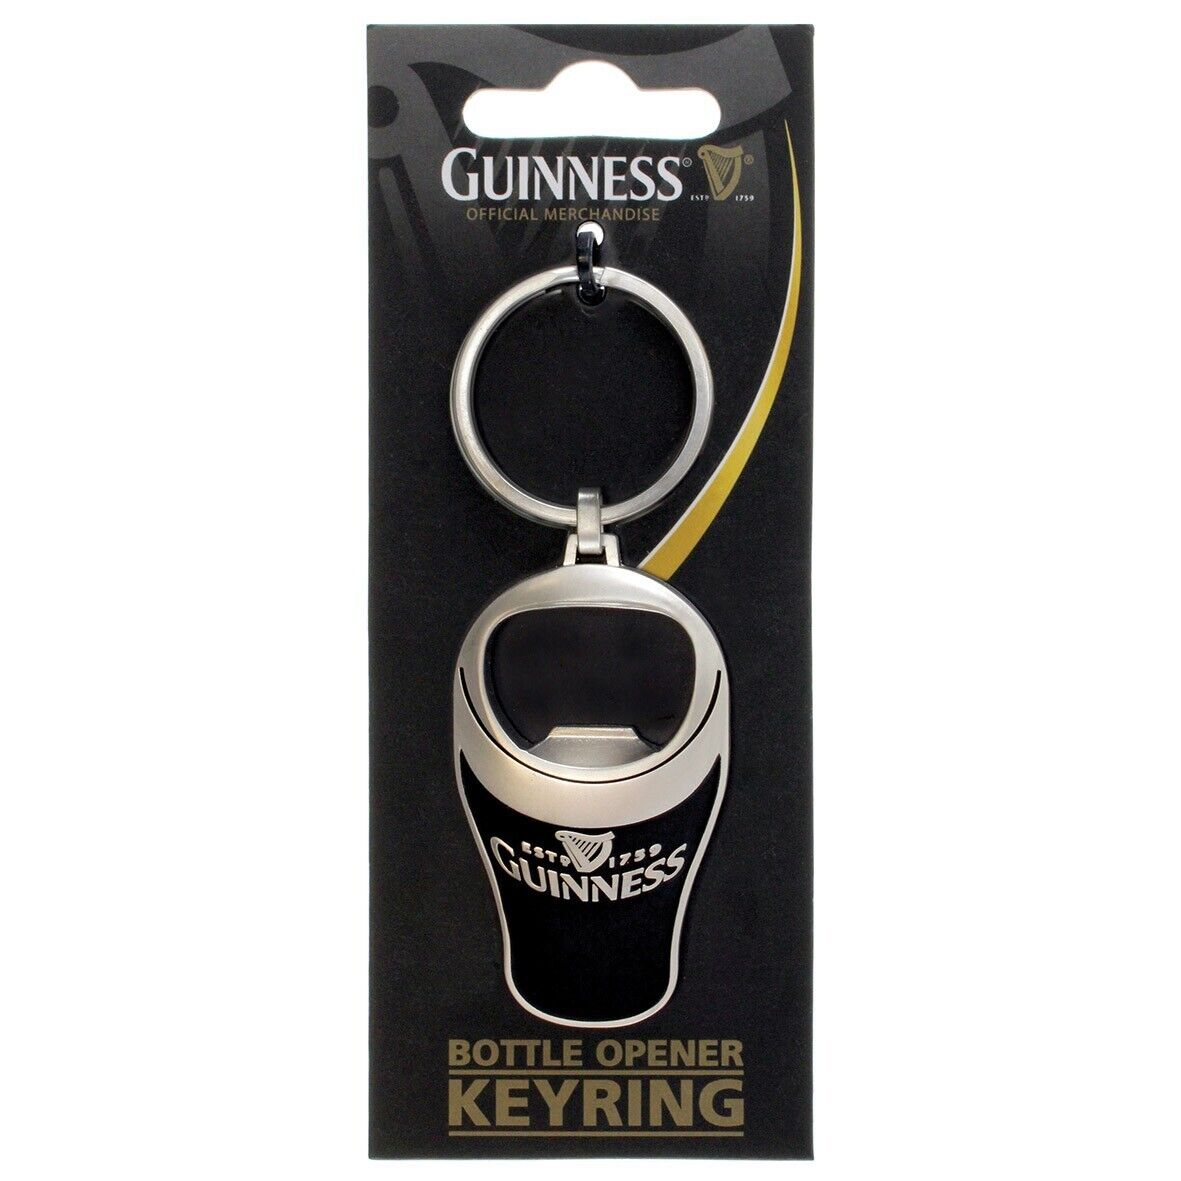 Guinness key ring, Bottle Opener